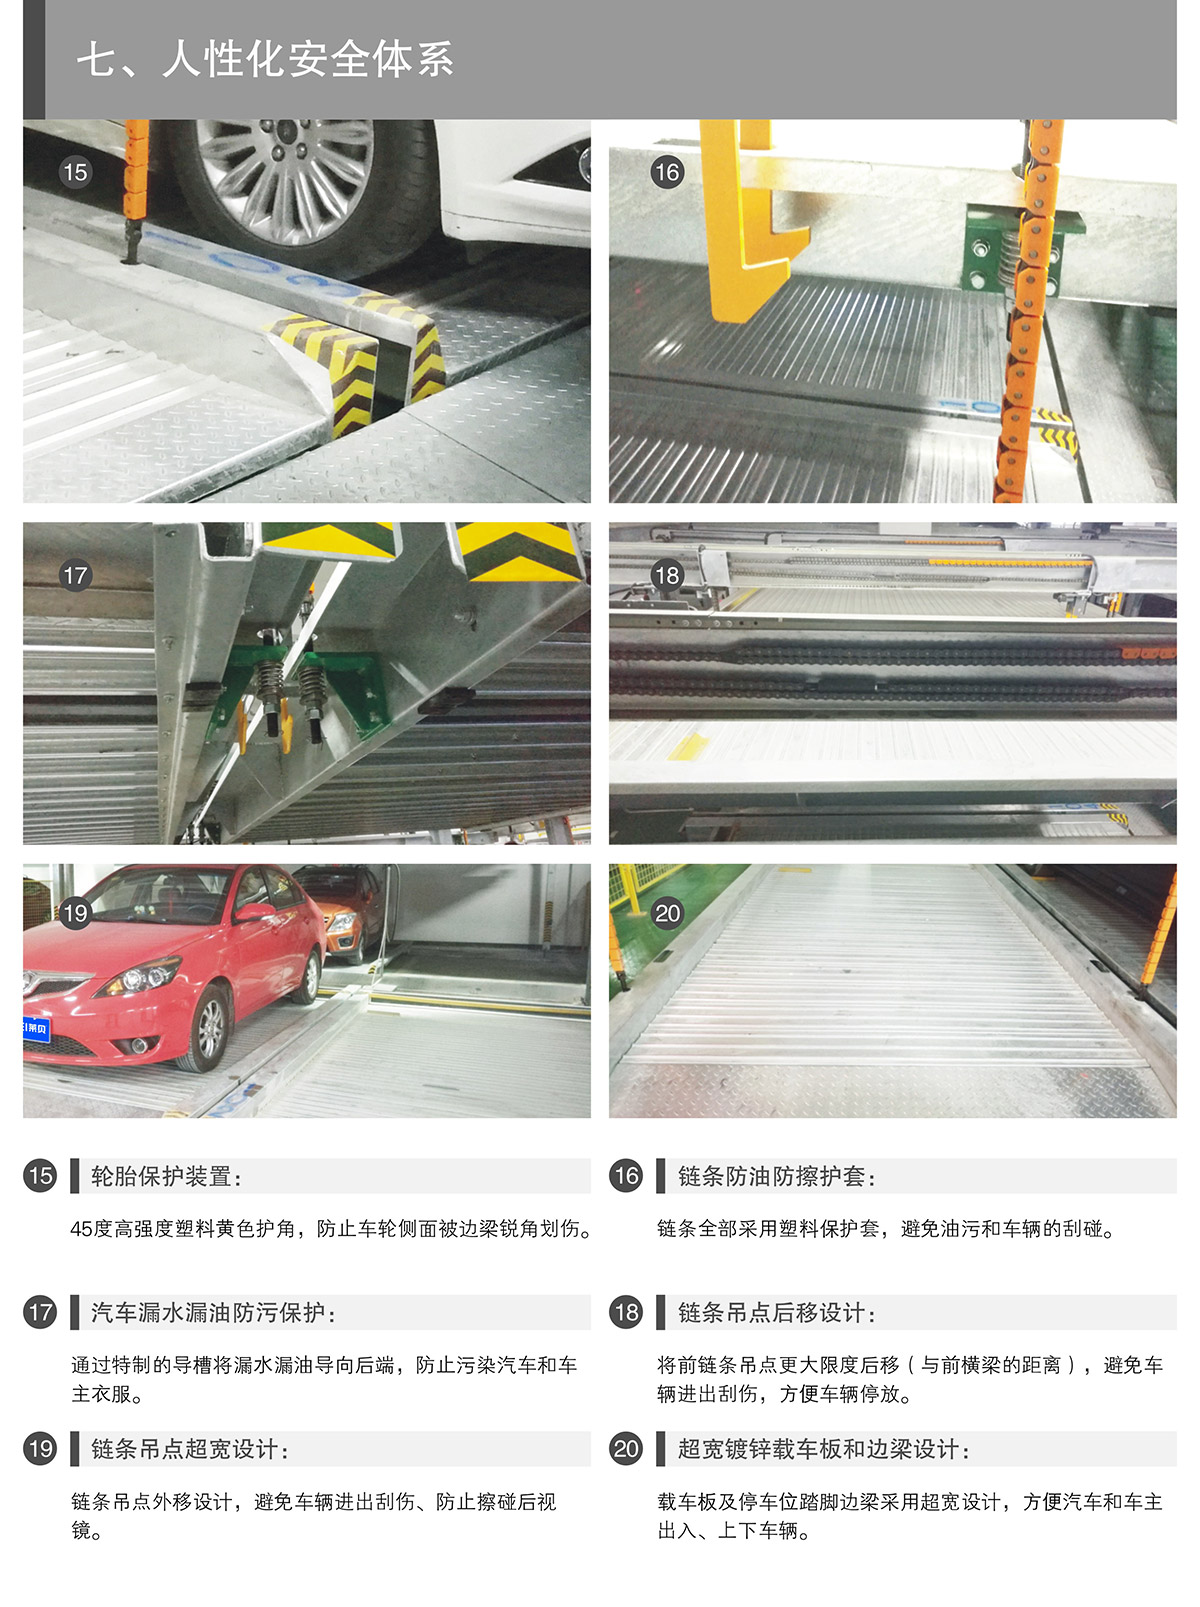 四川PSH7七层升降横移类机械式立体停车设备人性化安全体系.jpg